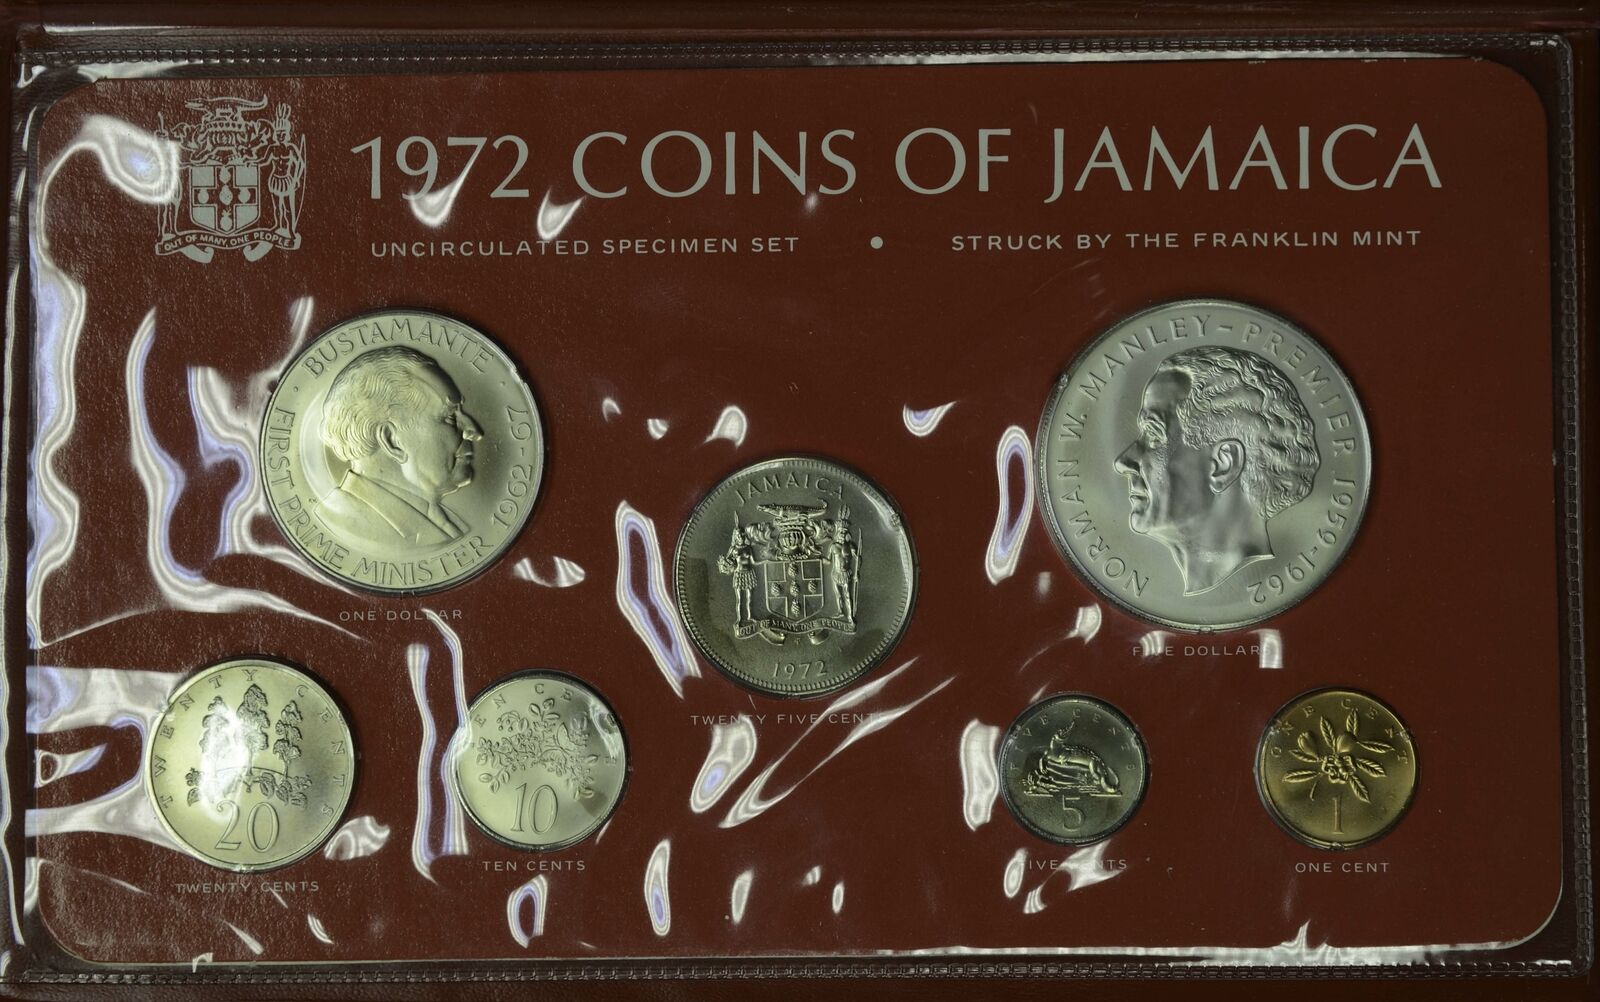 Jamaica 1972 7 Coin Uncirculated Specimen Set Silver $5 1.2335oz Original